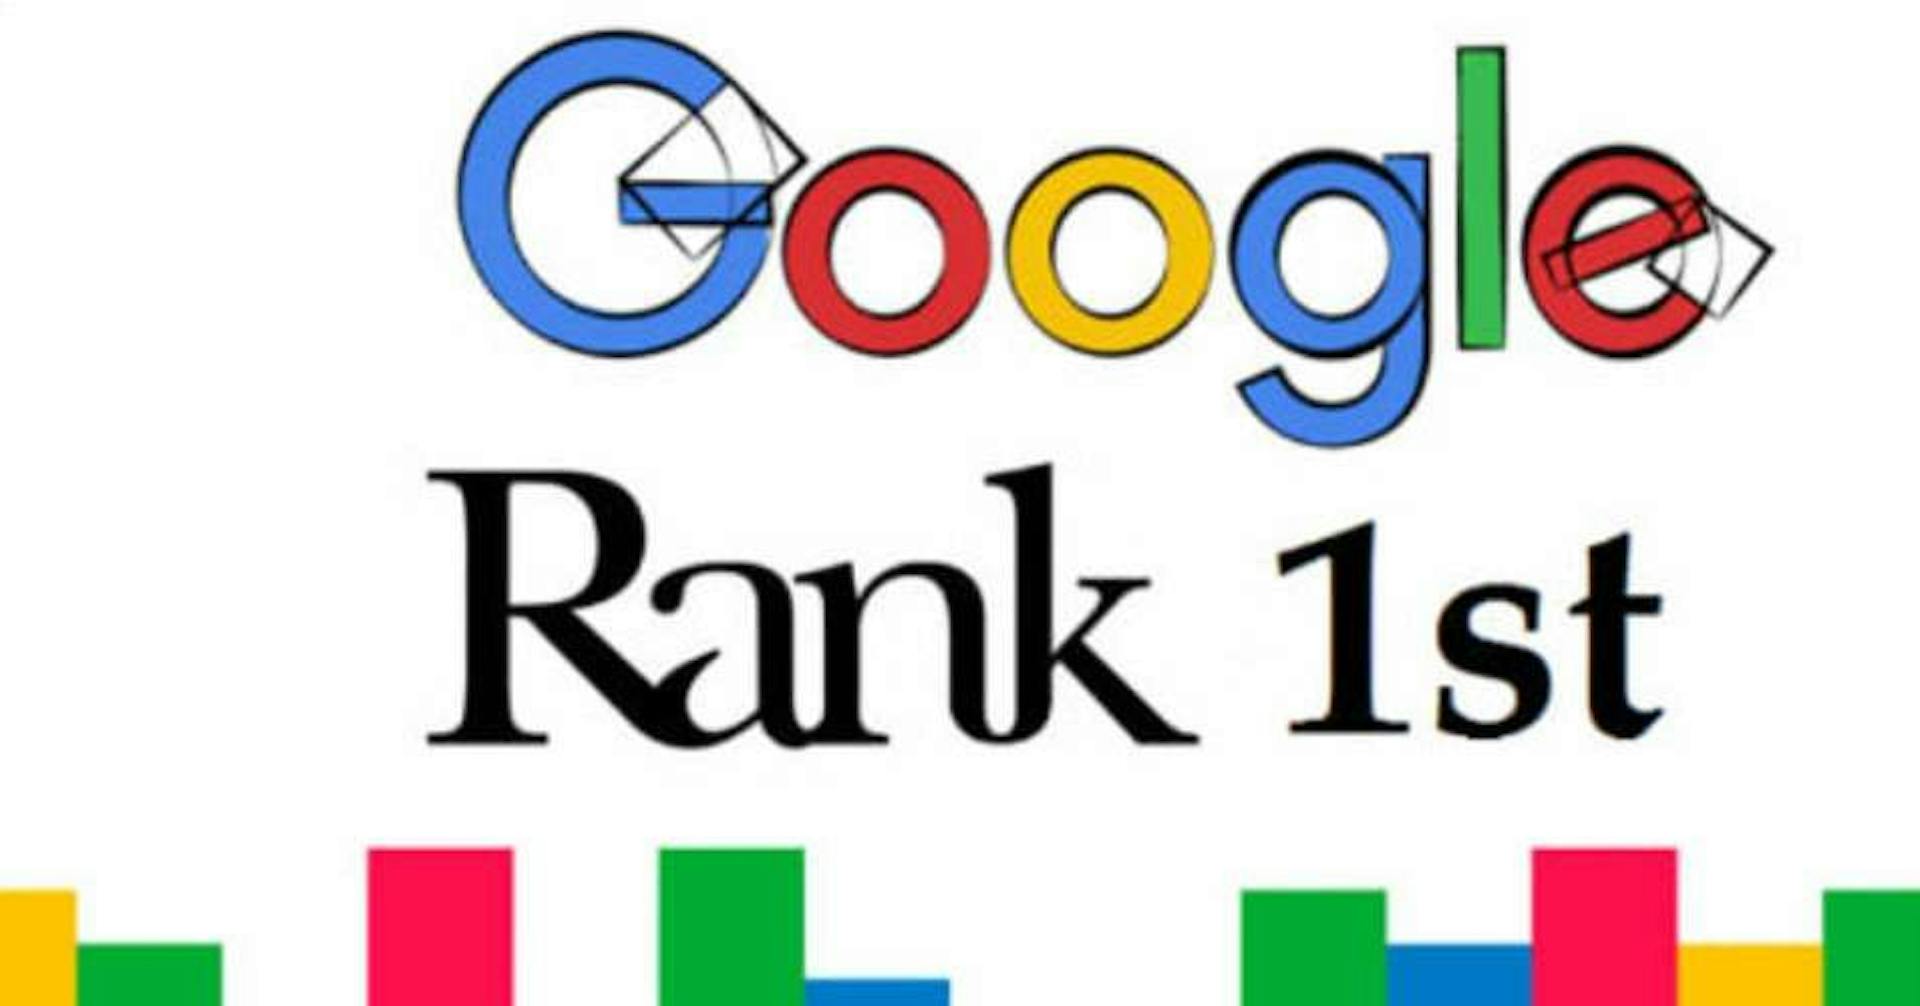 Google で 1 位にランクイン - 100,000 ドルの予算がなくても、わずか 45 ドルで達成できます !!!